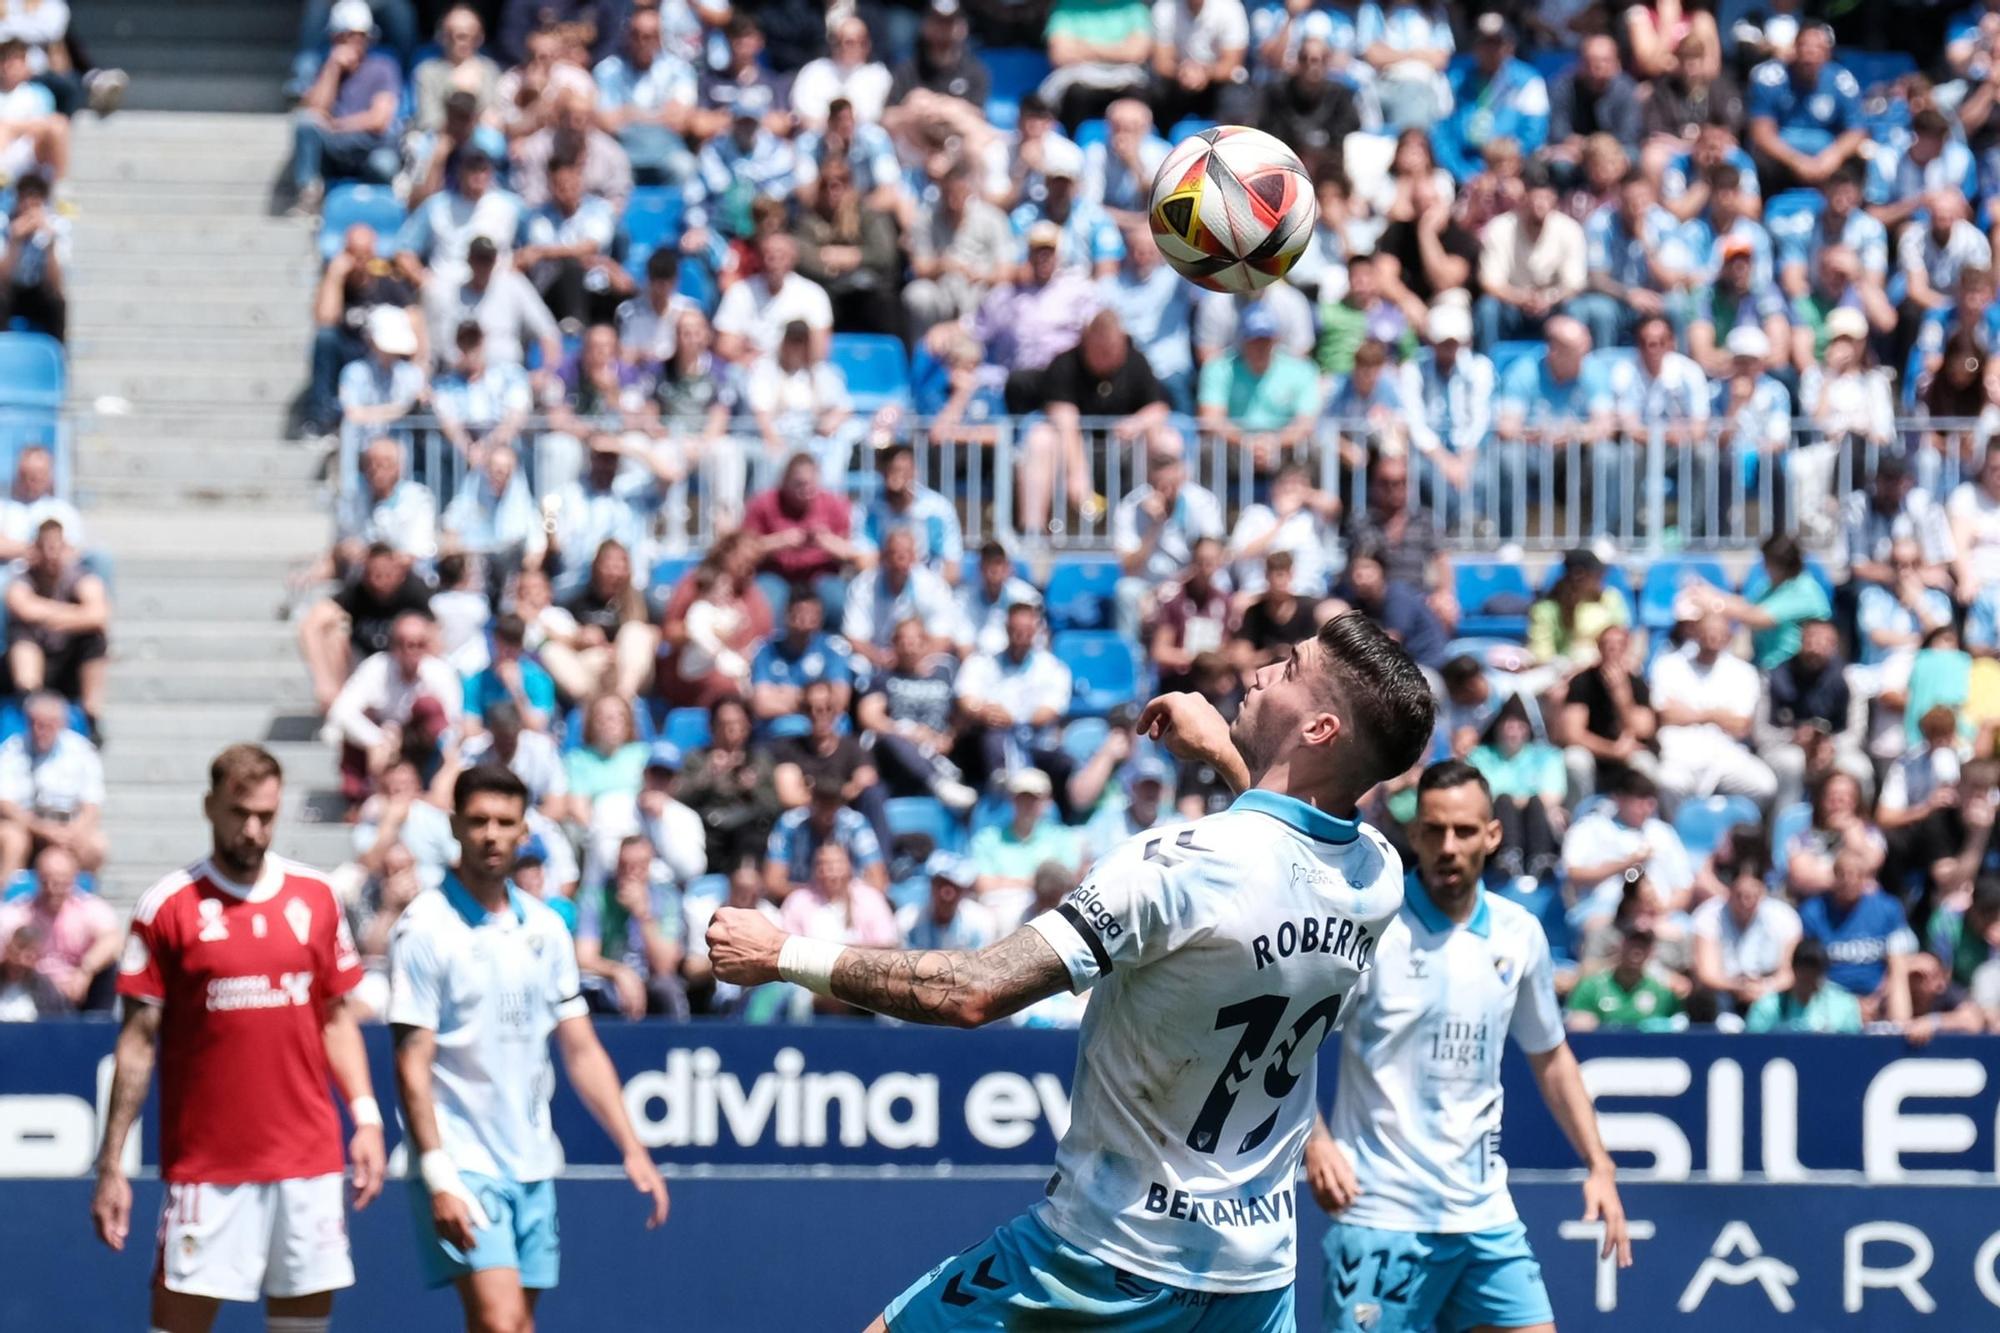 El Málaga CF - Real Murcia, en fotos